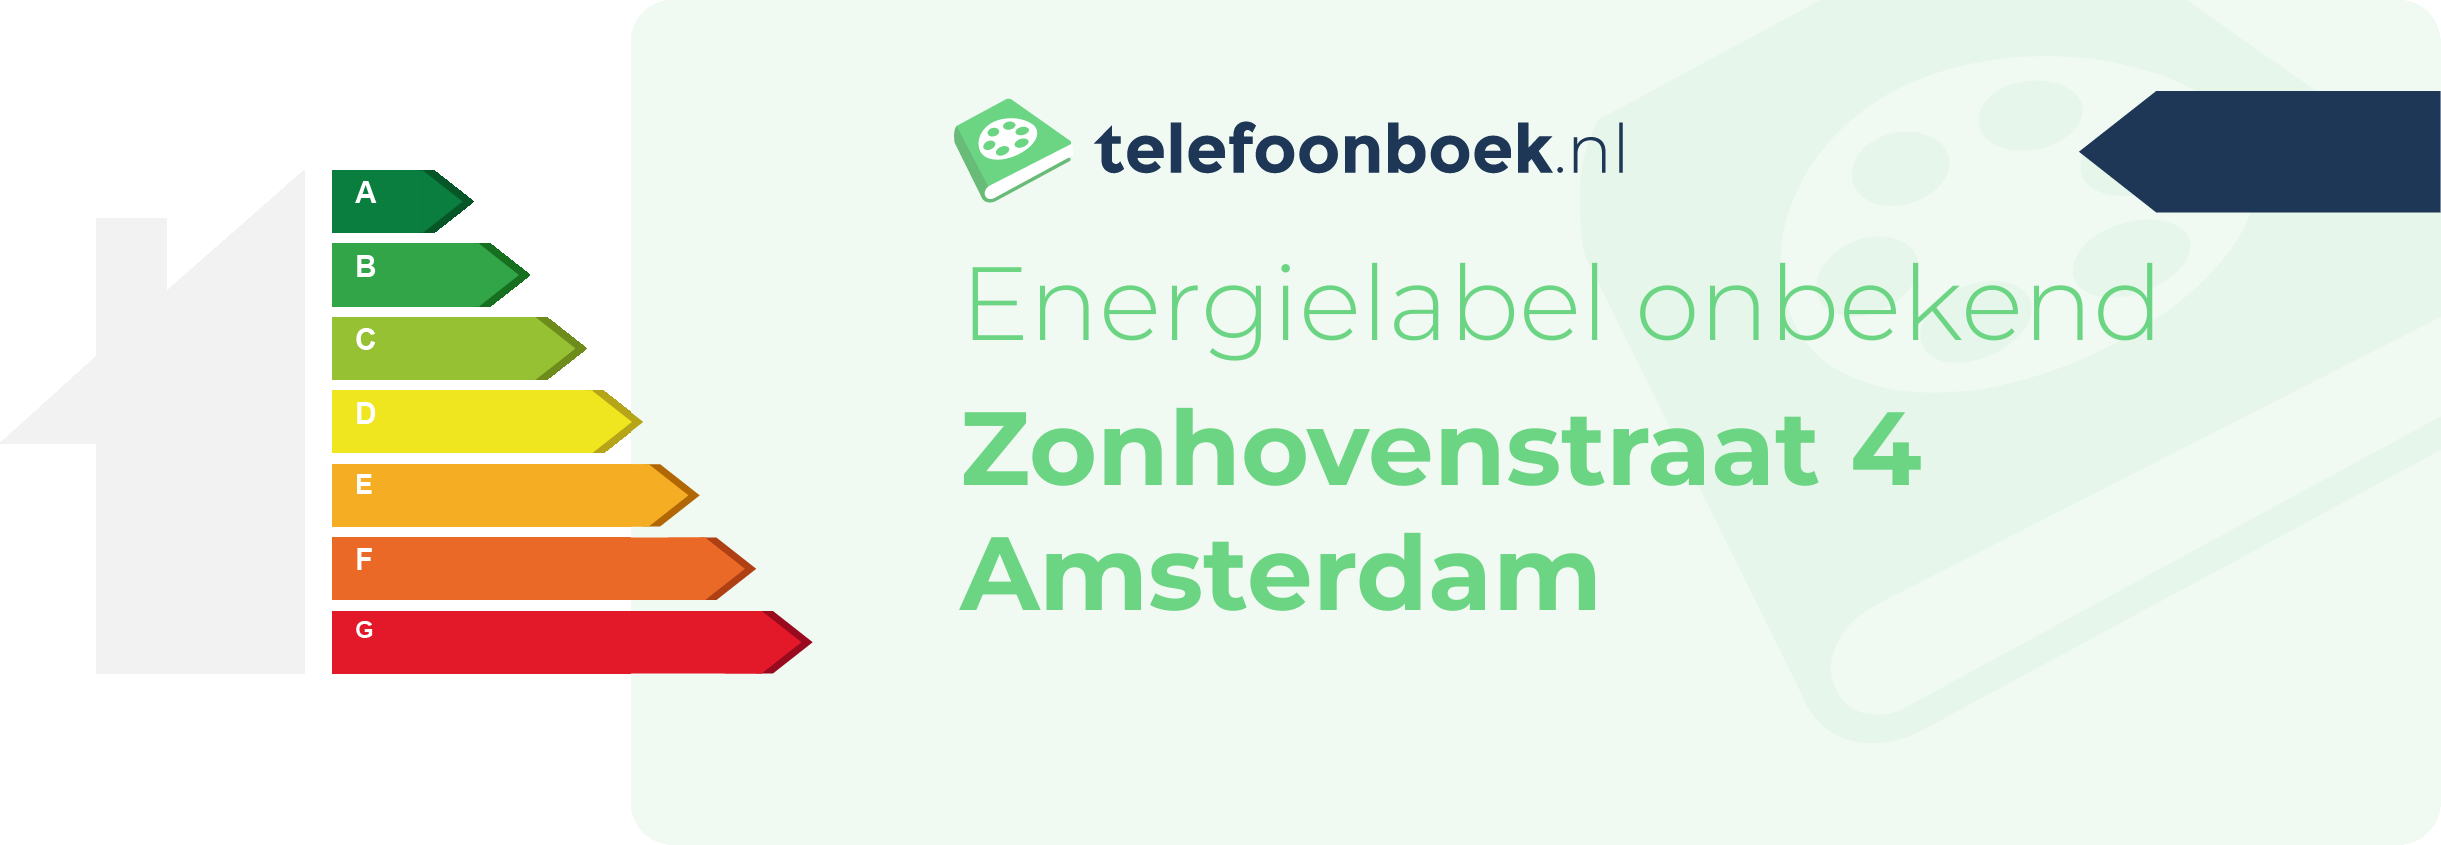 Energielabel Zonhovenstraat 4 Amsterdam